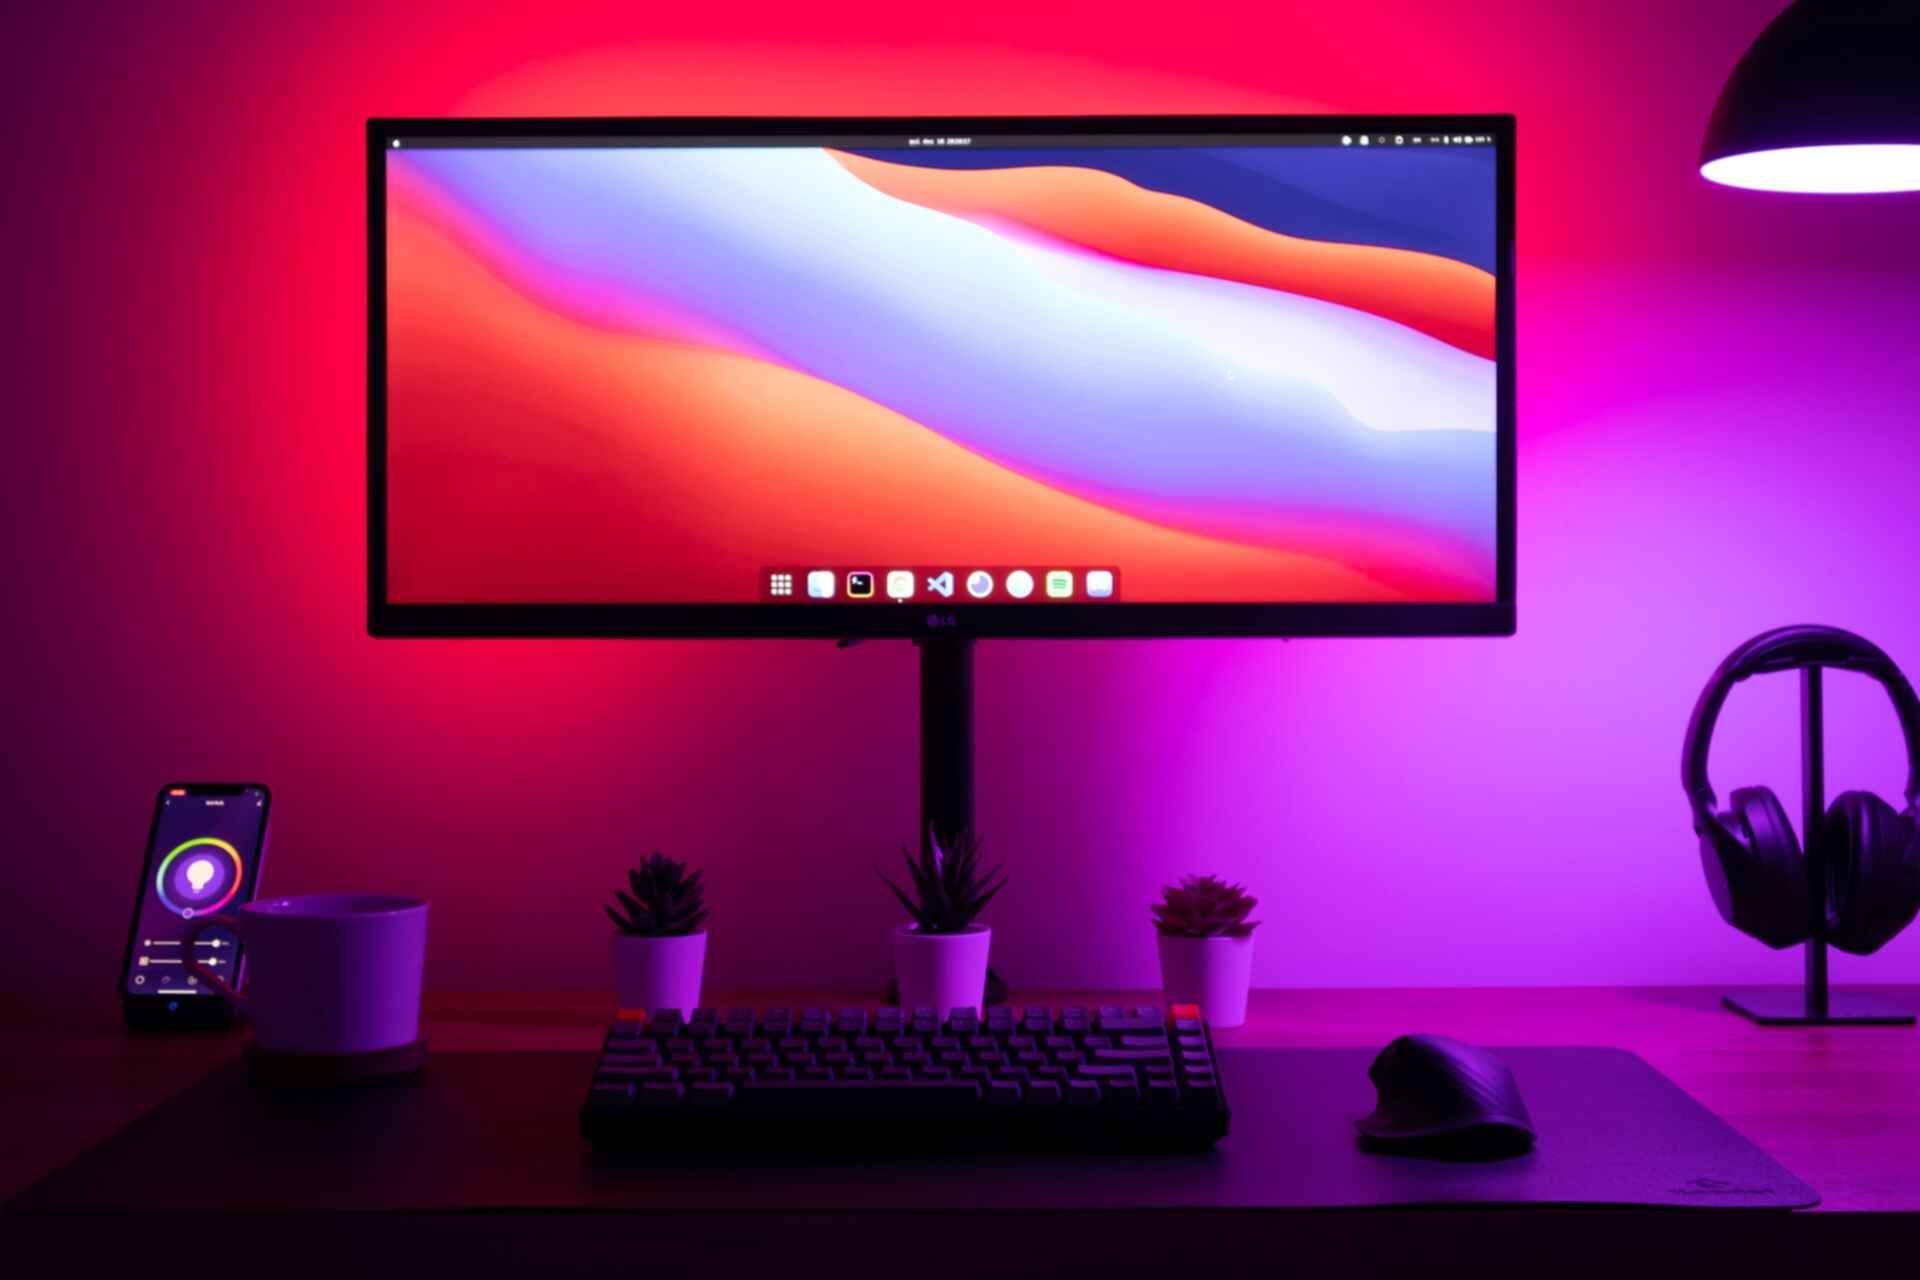 Jenis-jenis layar monitor pada komputer dan laptop